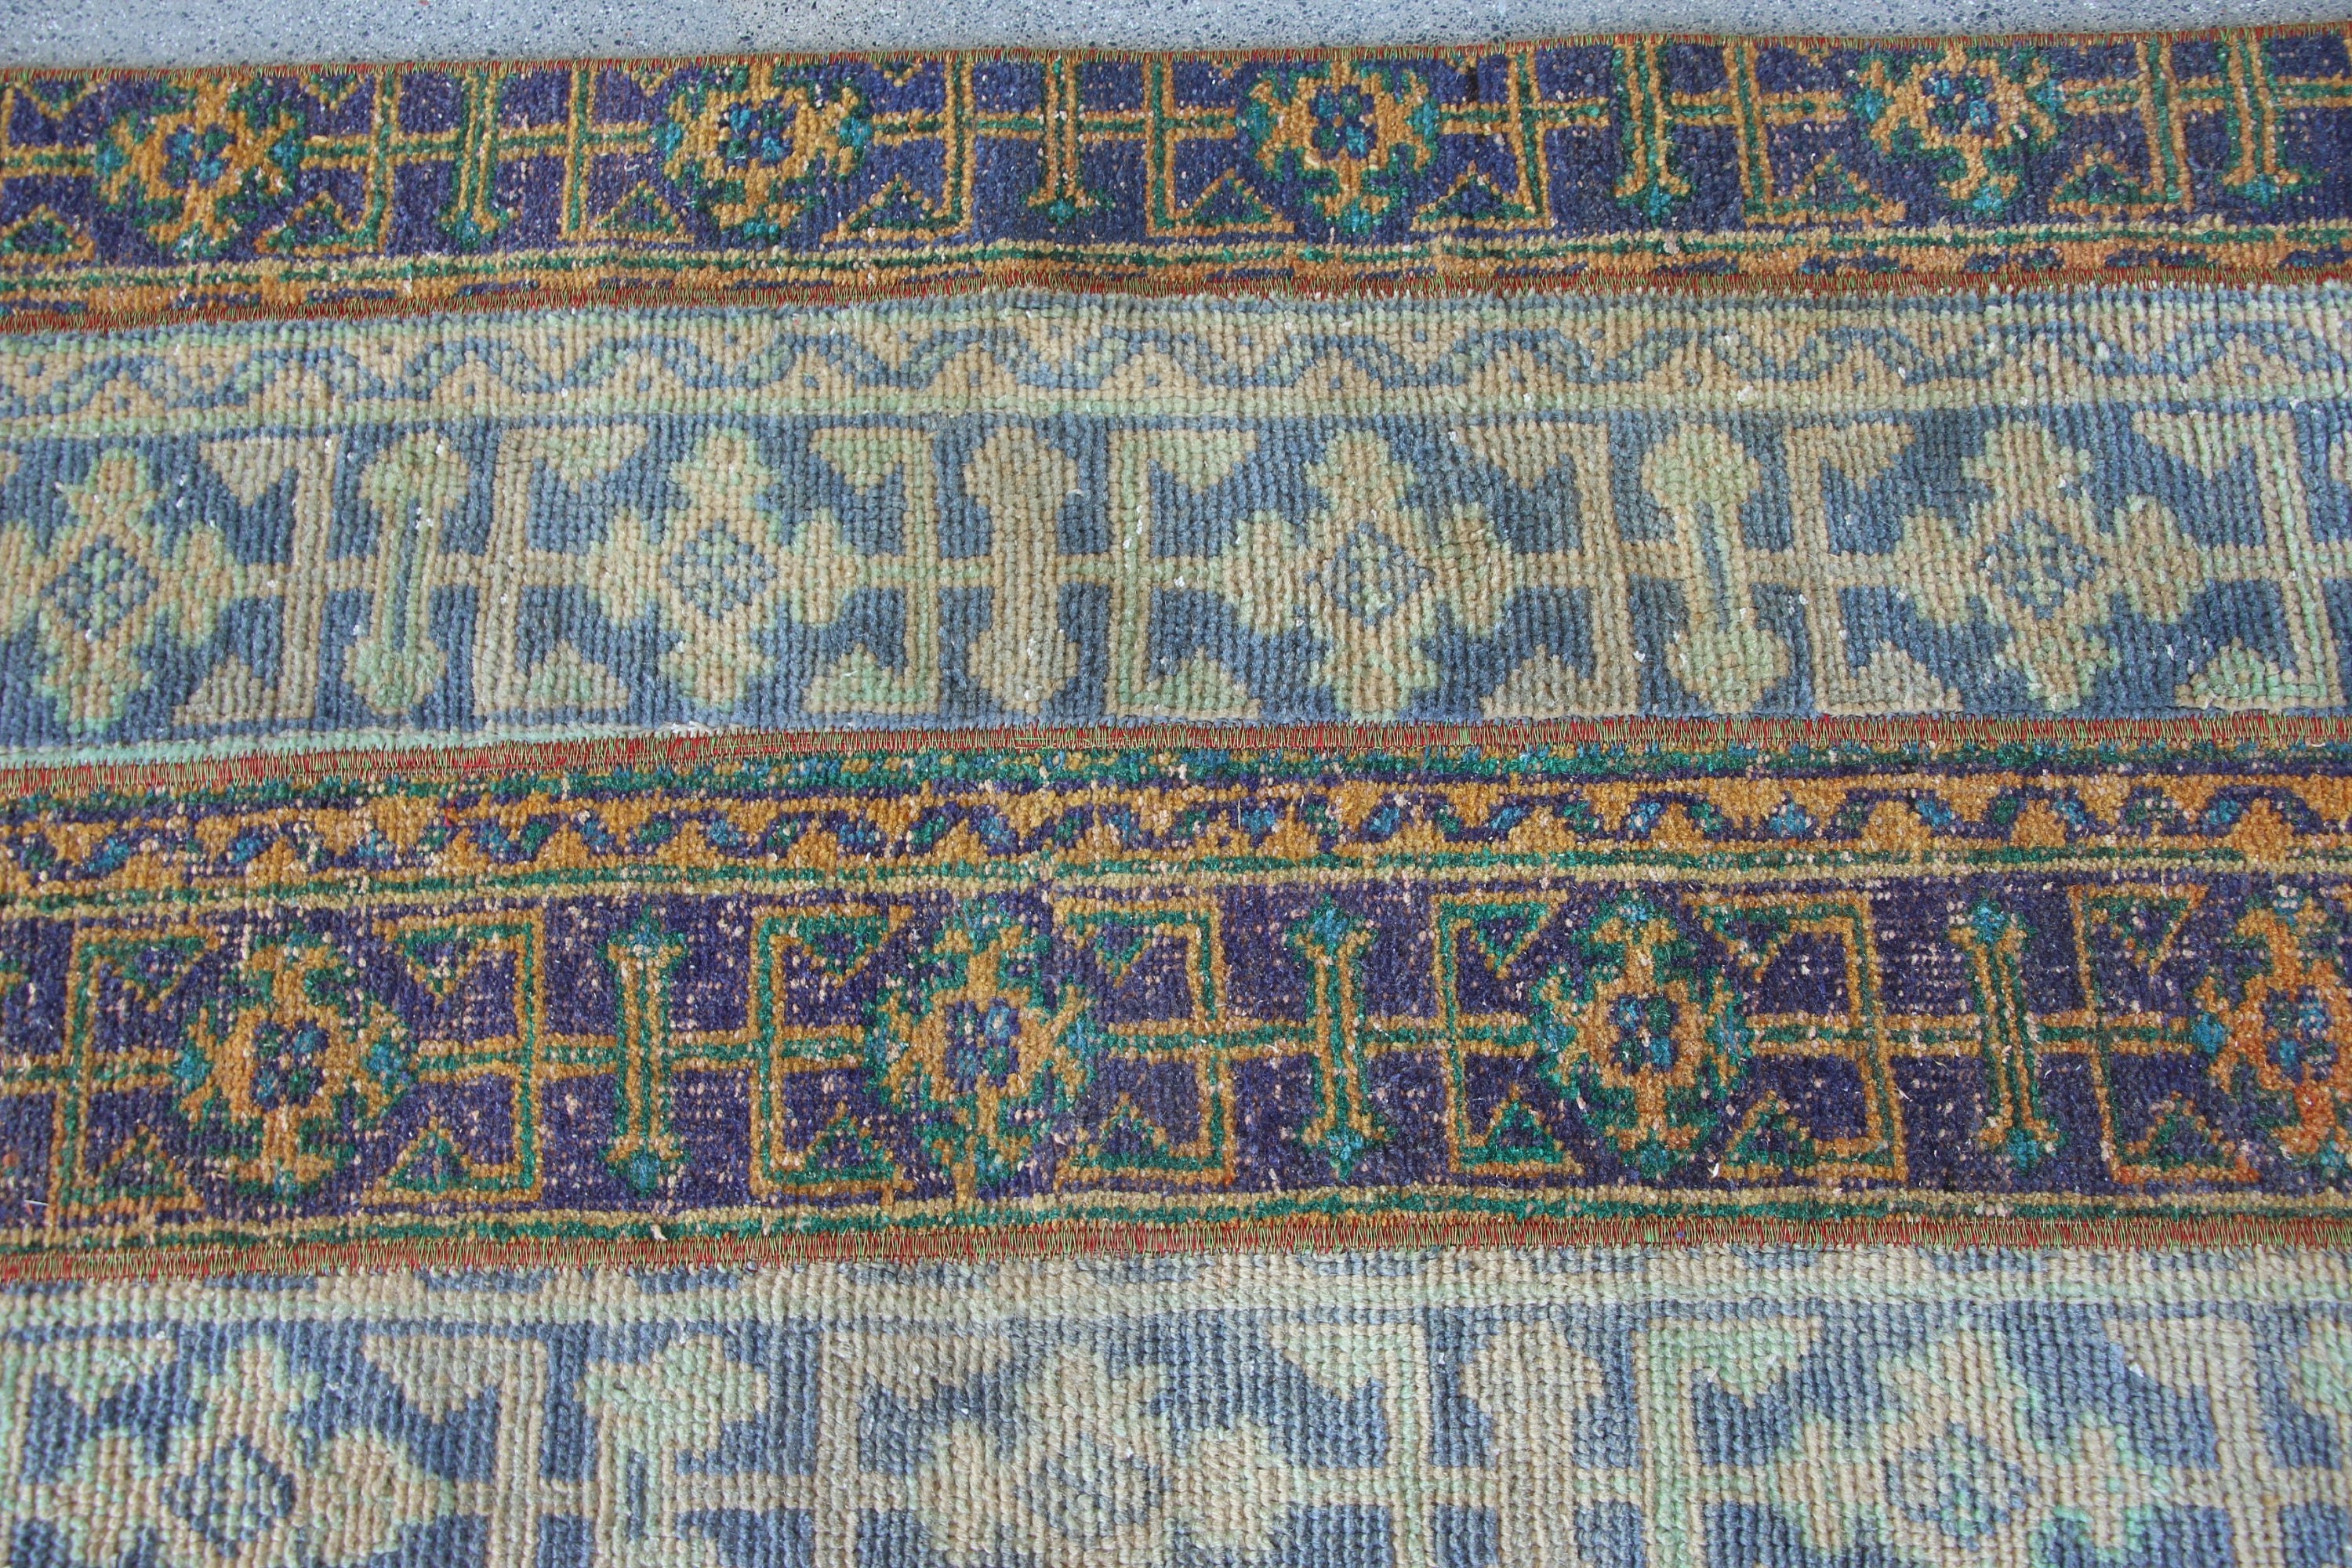 Turkish Rug, Rugs for Kitchen, Stair Rug, 2.3x6 ft Runner Rugs, Bedroom Rug, Moroccan Rug, Kitchen Rug, Vintage Rug, Blue Antique Rug